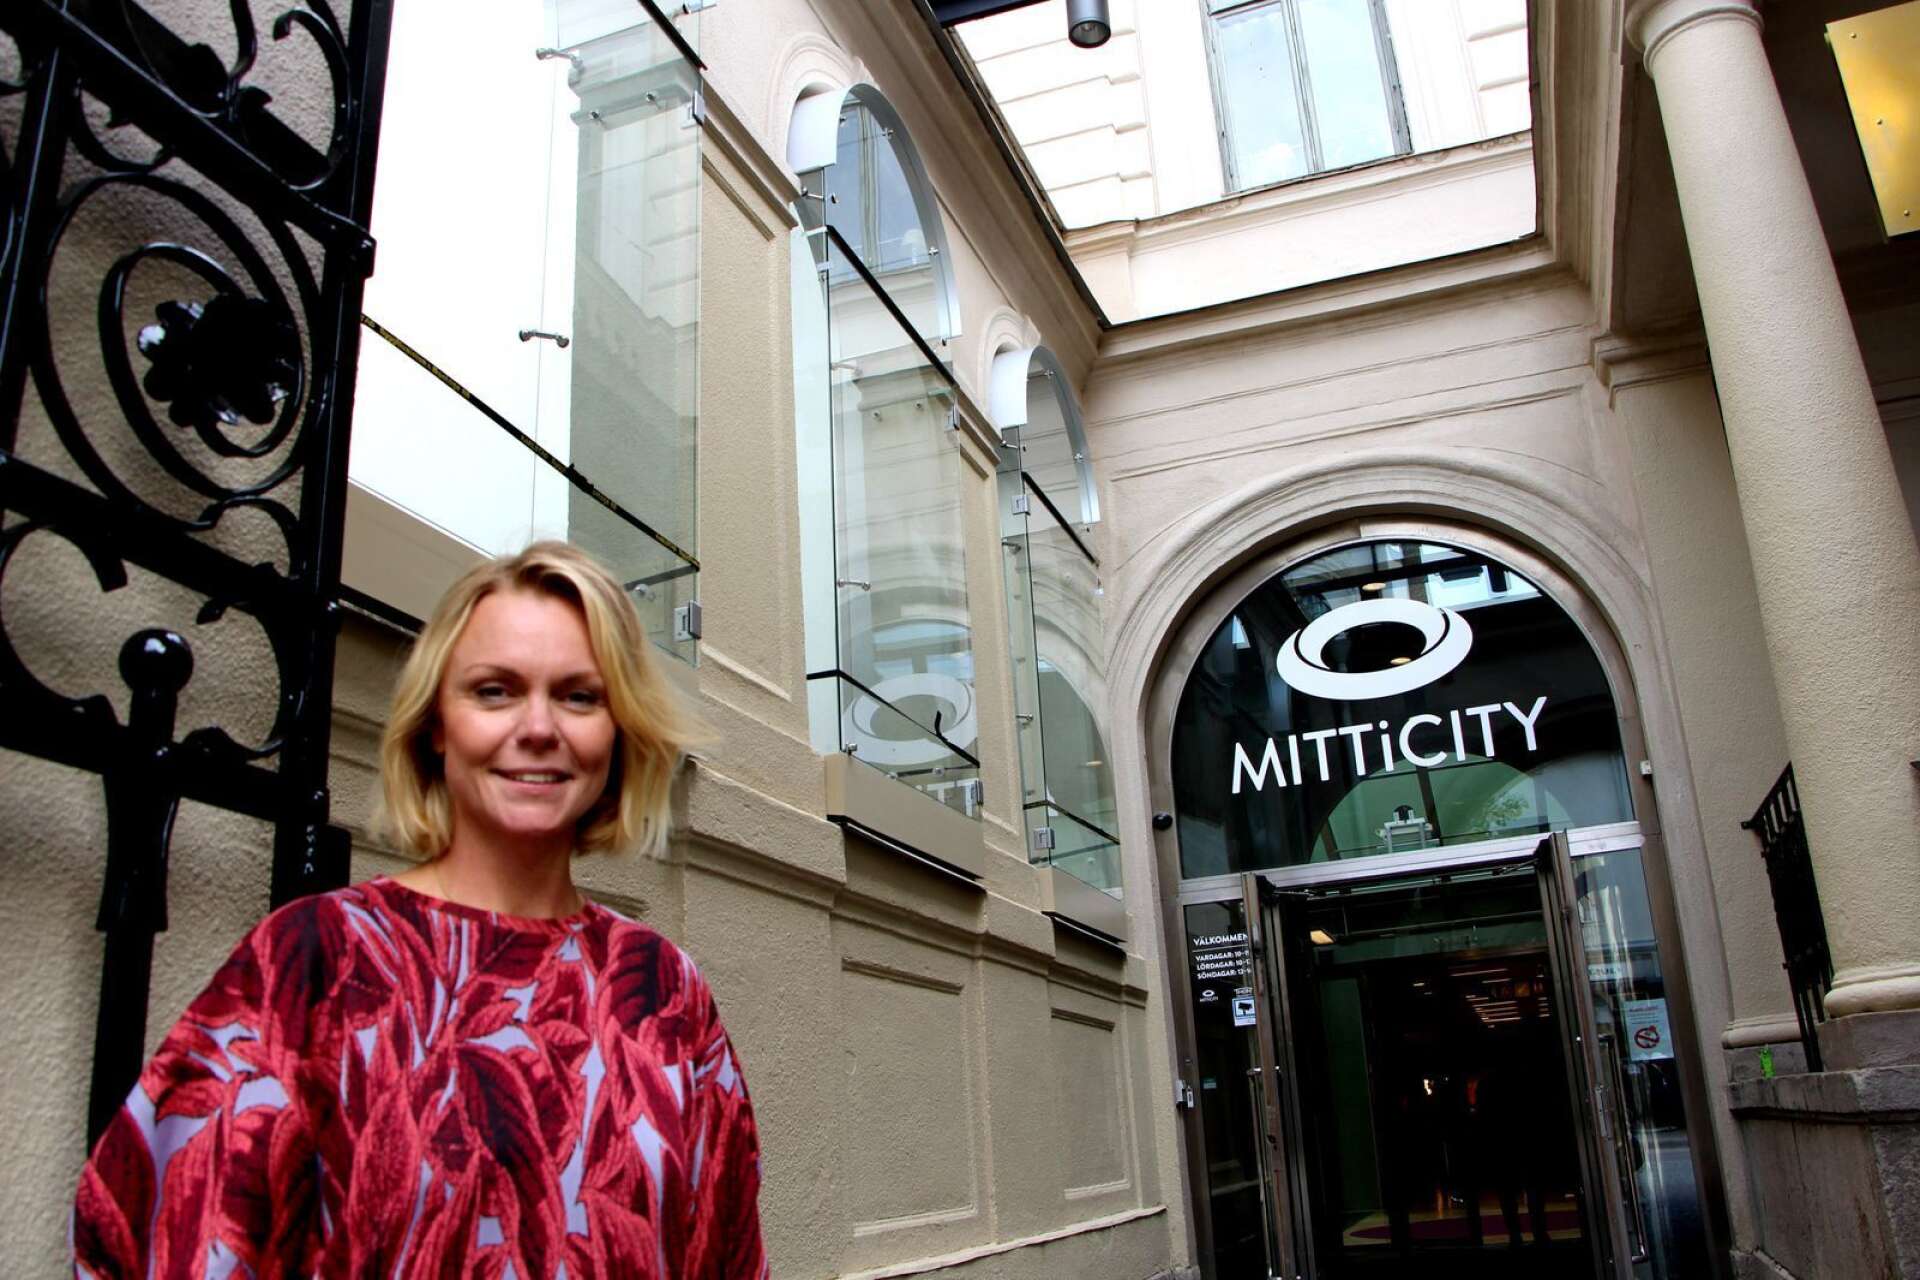  ”Det blir väldigt spännande att få in Wagner hos oss i Mitticity”, säger centerchefen Ann-Sophie Redfern.